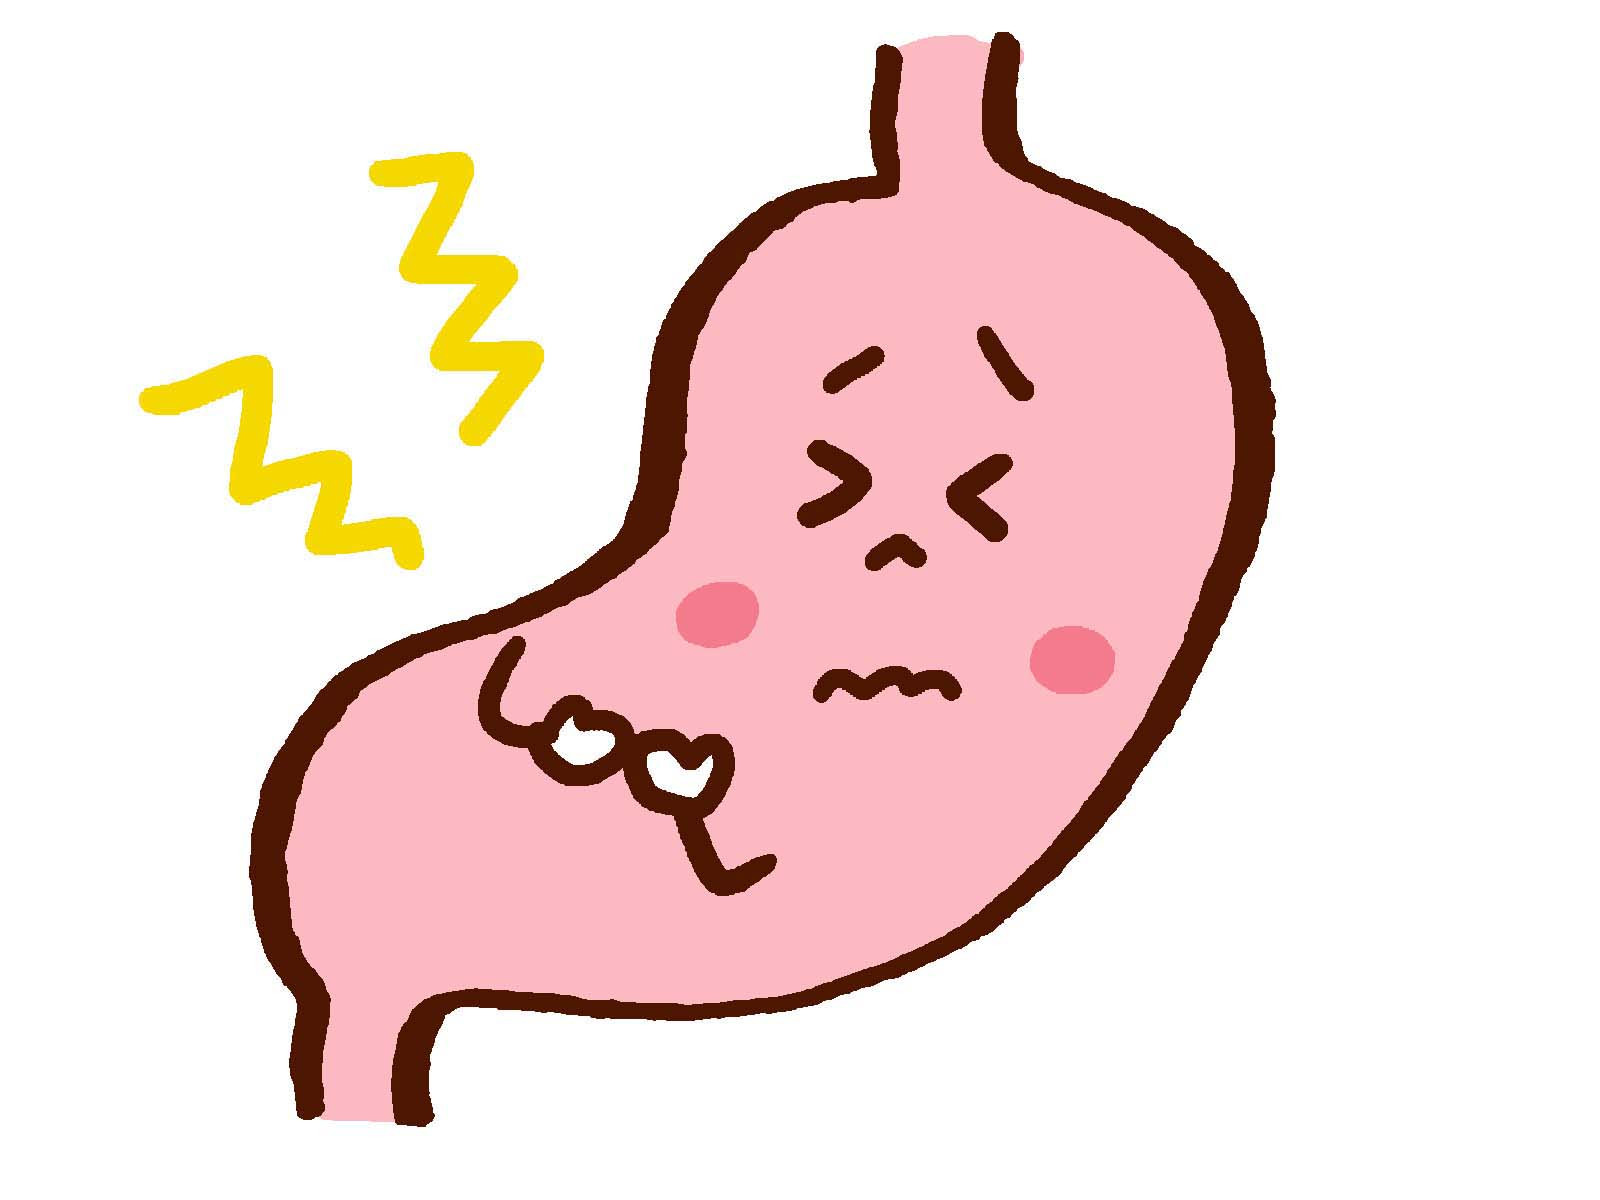 原创萎缩性胃炎和胃溃疡哪个更严重?医生帮你深入分析,做好预防措施